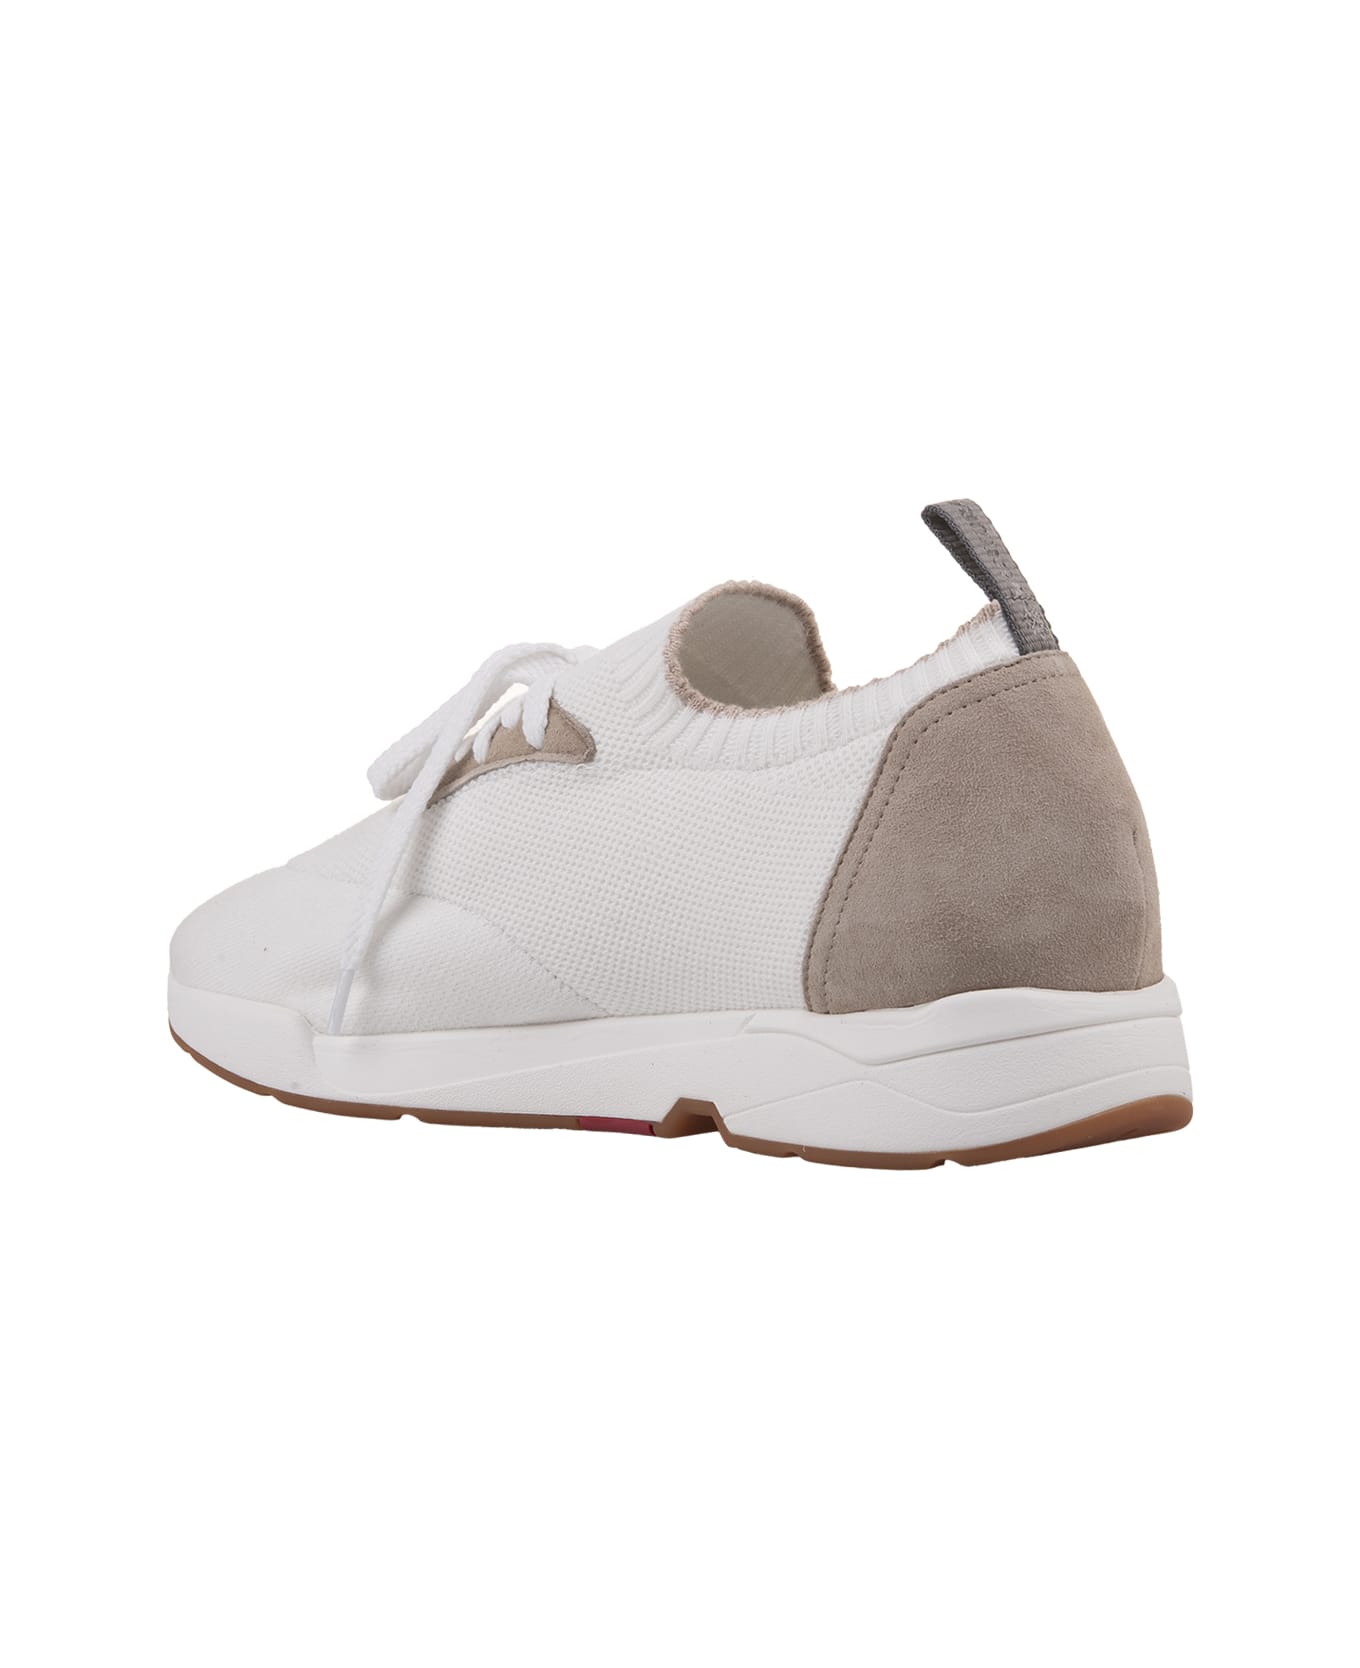 Andrea Ventura W-dragon Sneakers In White And Beige Fashion Fabric - White